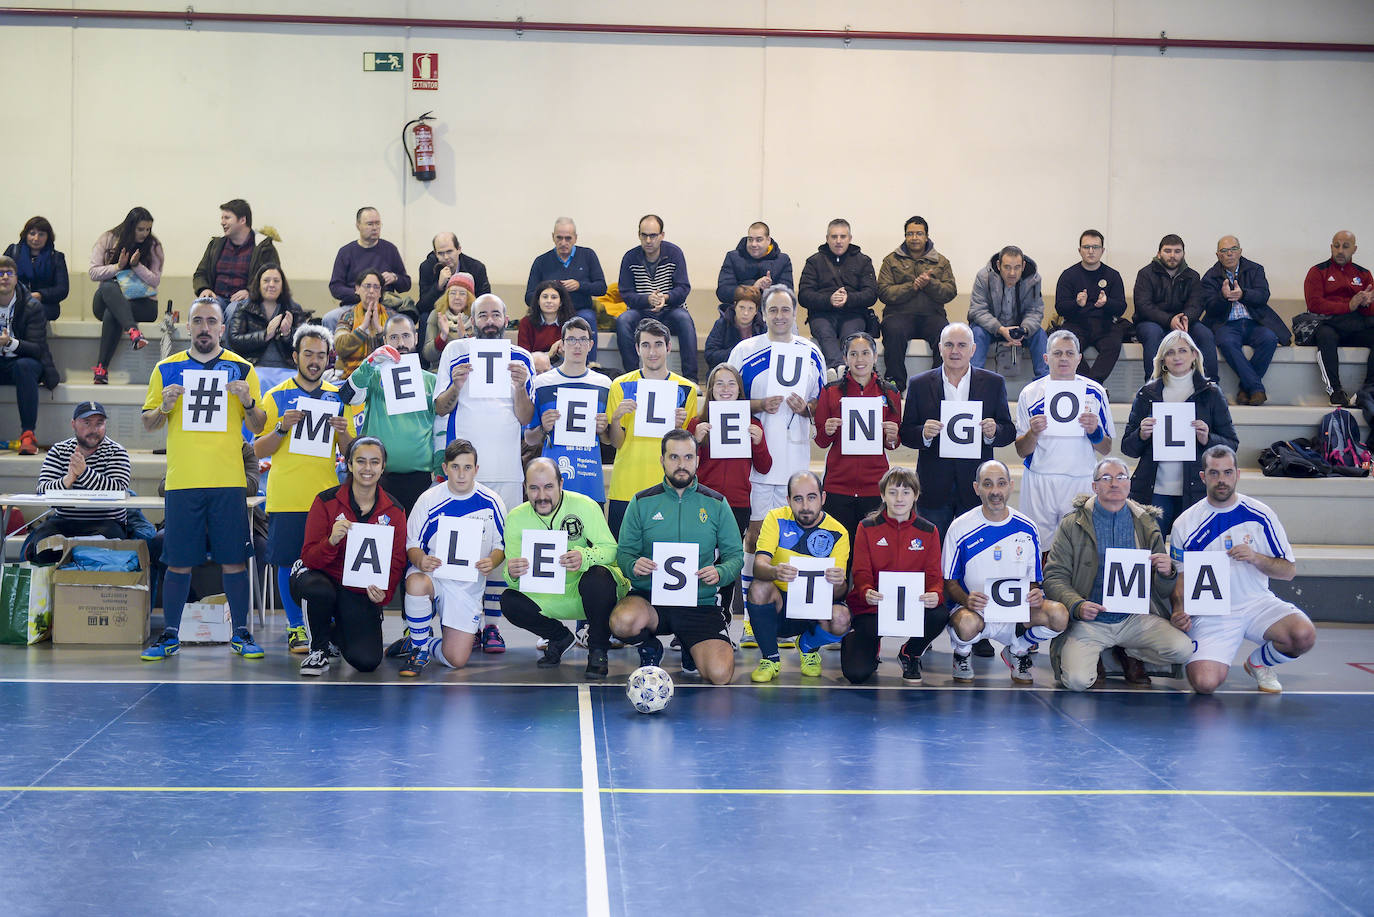 El polideportivo de Teatinos acogió un partido de fútbol sala para dar visibilidad y normalizar la enfermedad mental